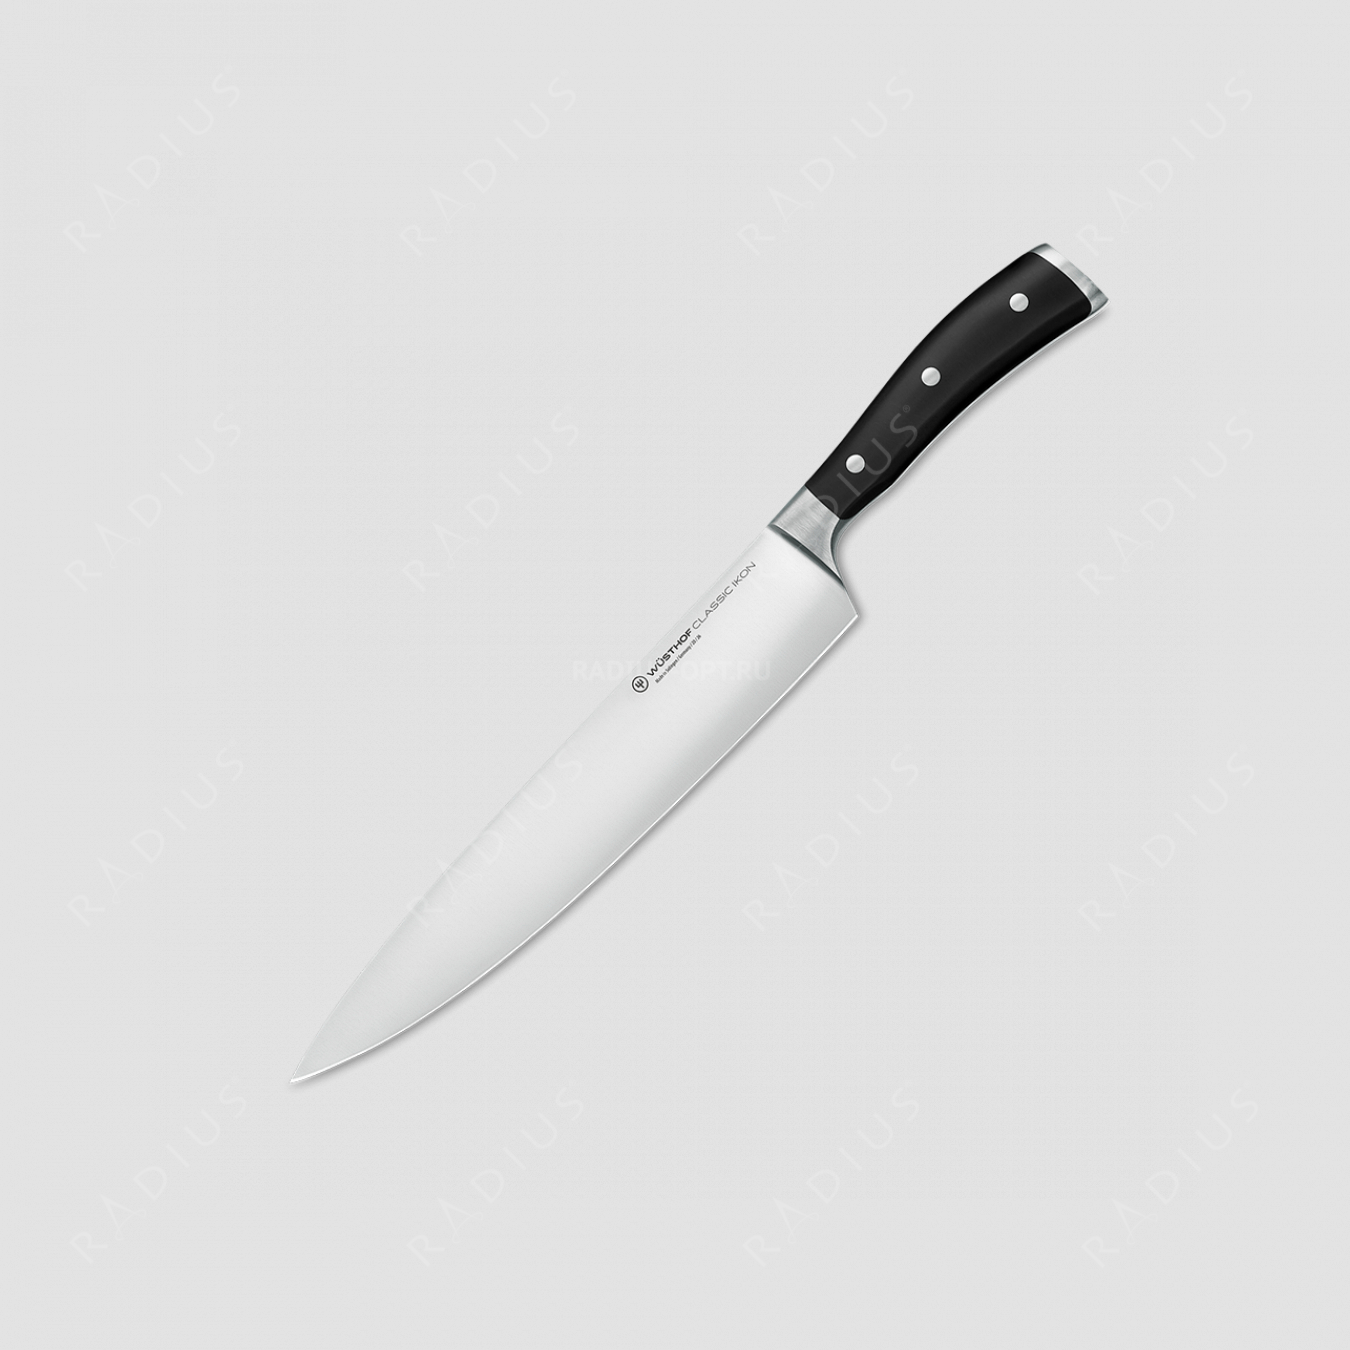 Профессиональный поварской кухонный нож 26 см, серия Classic Ikon, WUESTHOF, Золинген, Германия